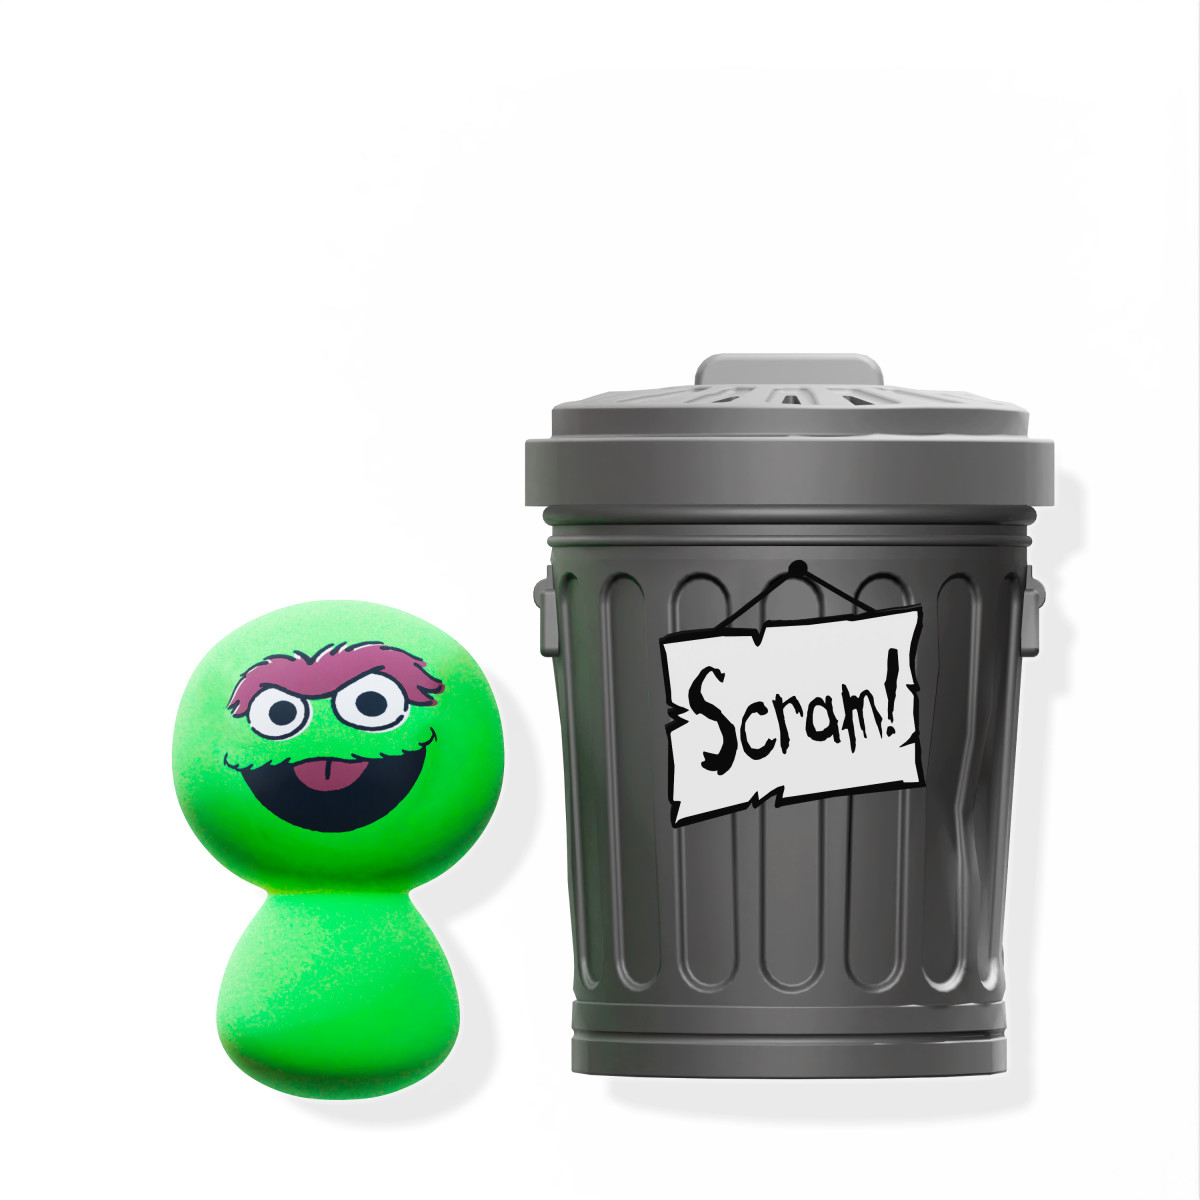 inside oscar the grouch trash can